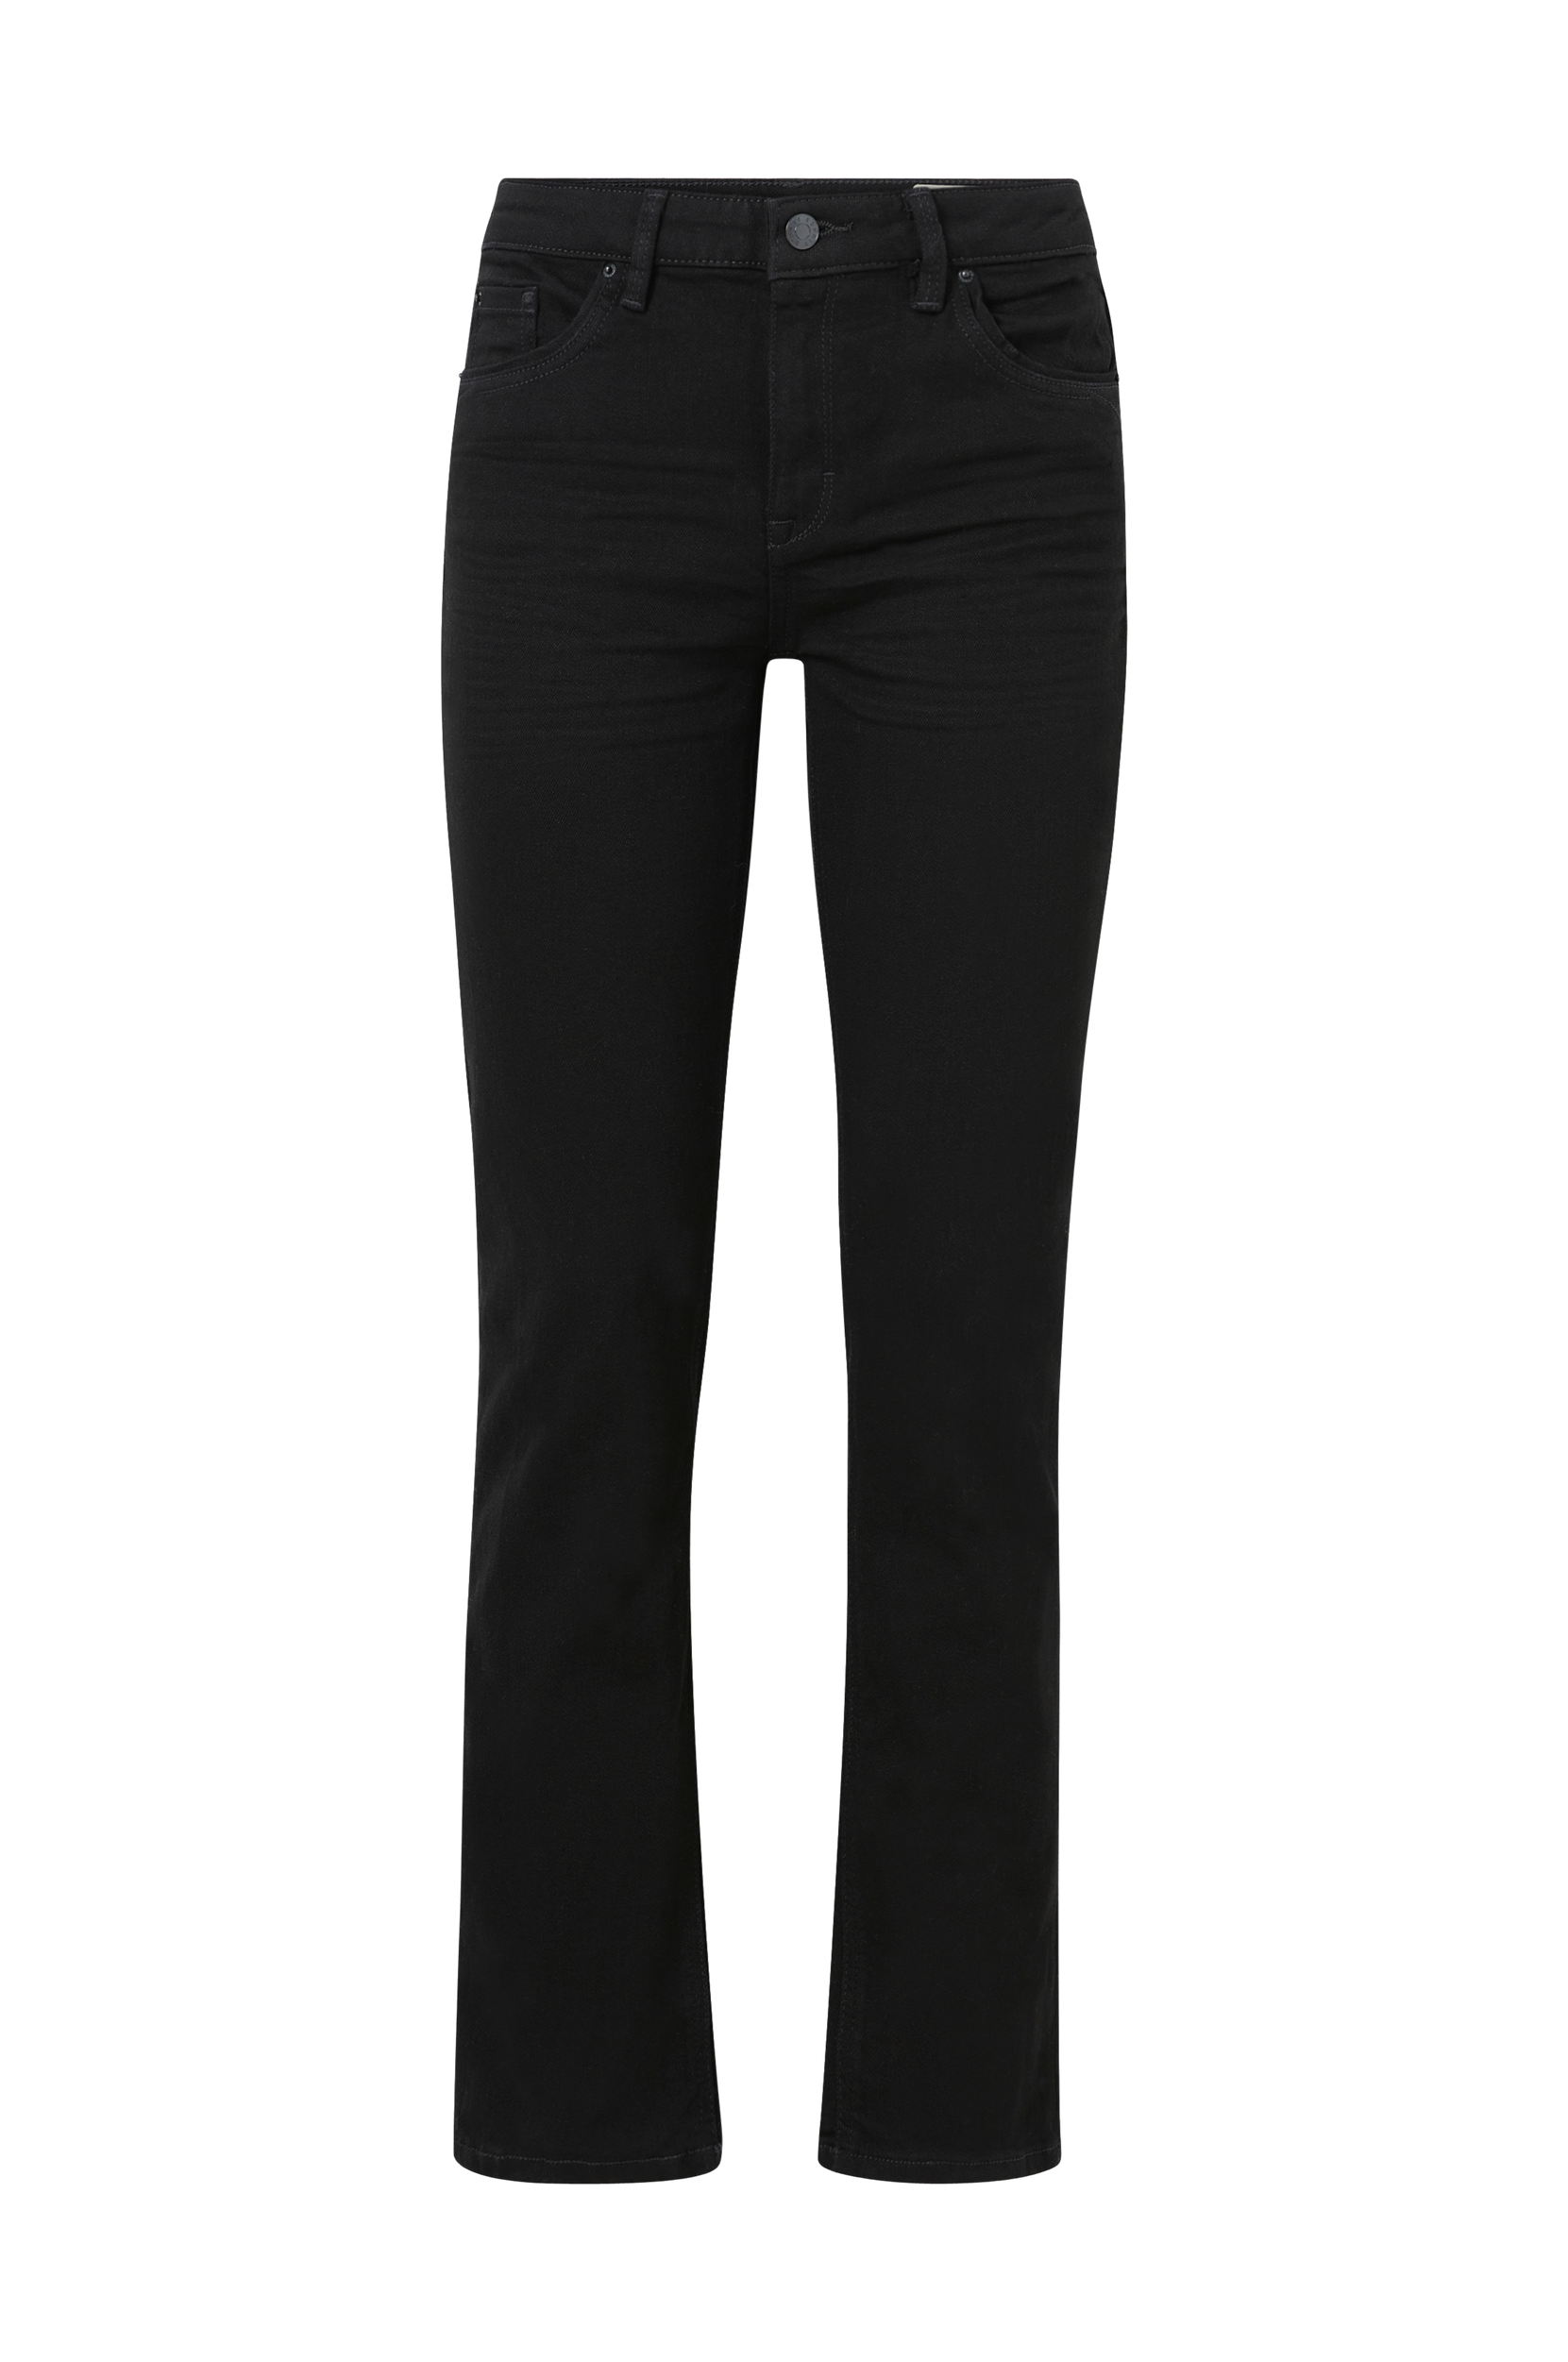 Esprit - Jeans Straight - Sort - W30/L32